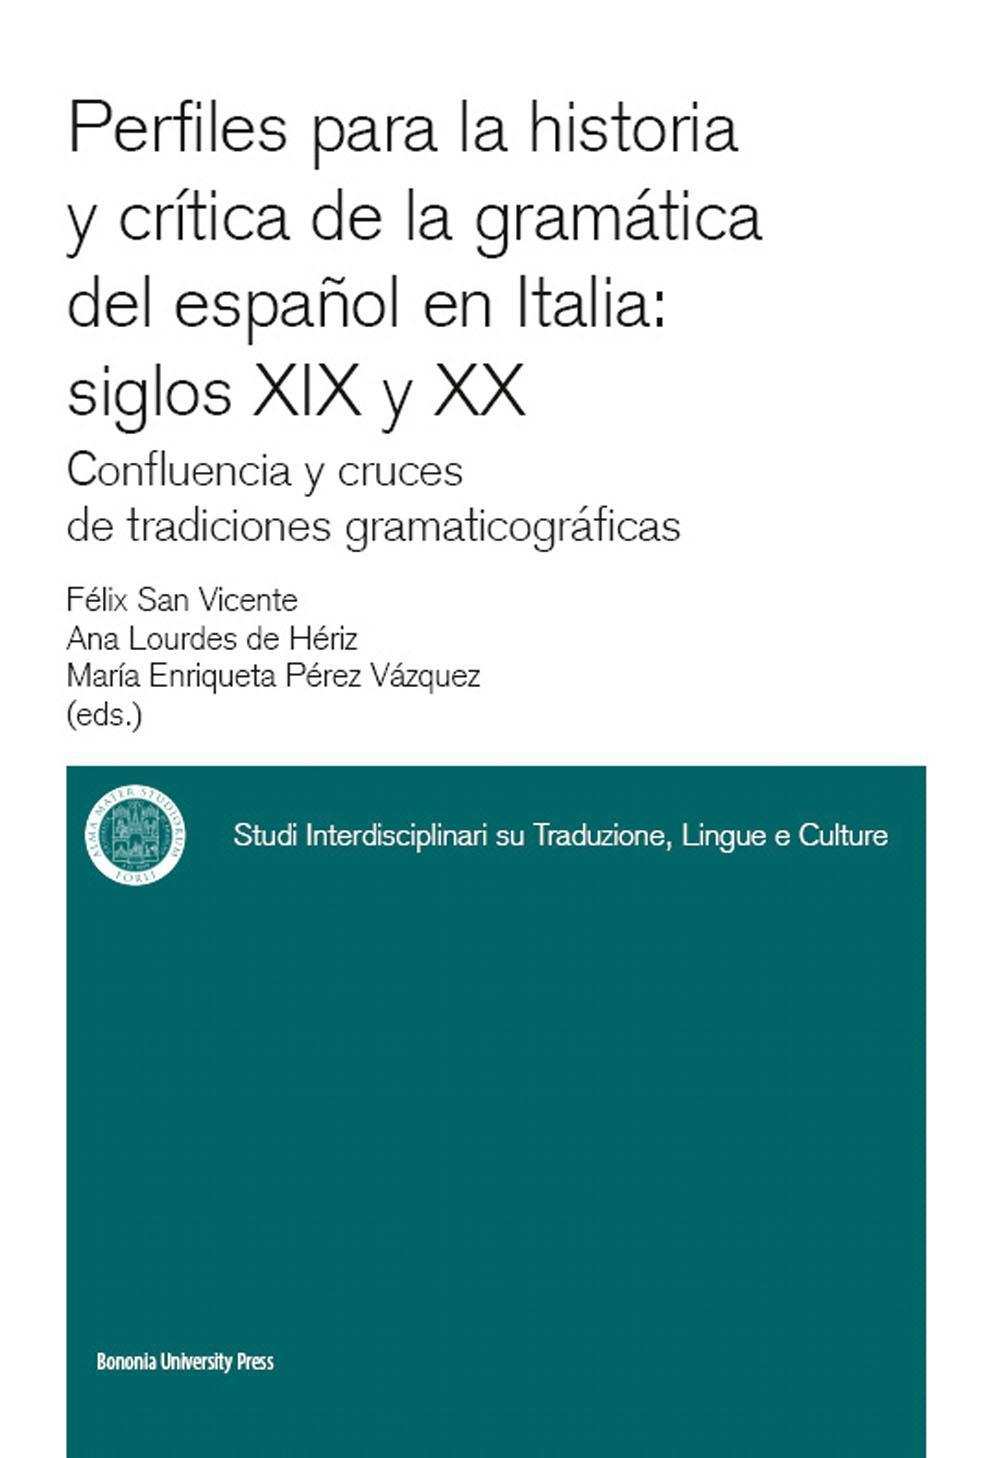 Perfiles para la historia y crítica de la gramàtica del espanõl en Italia: siglos XIX y XX confluencia y cruces de tradiciones gramaticográficas